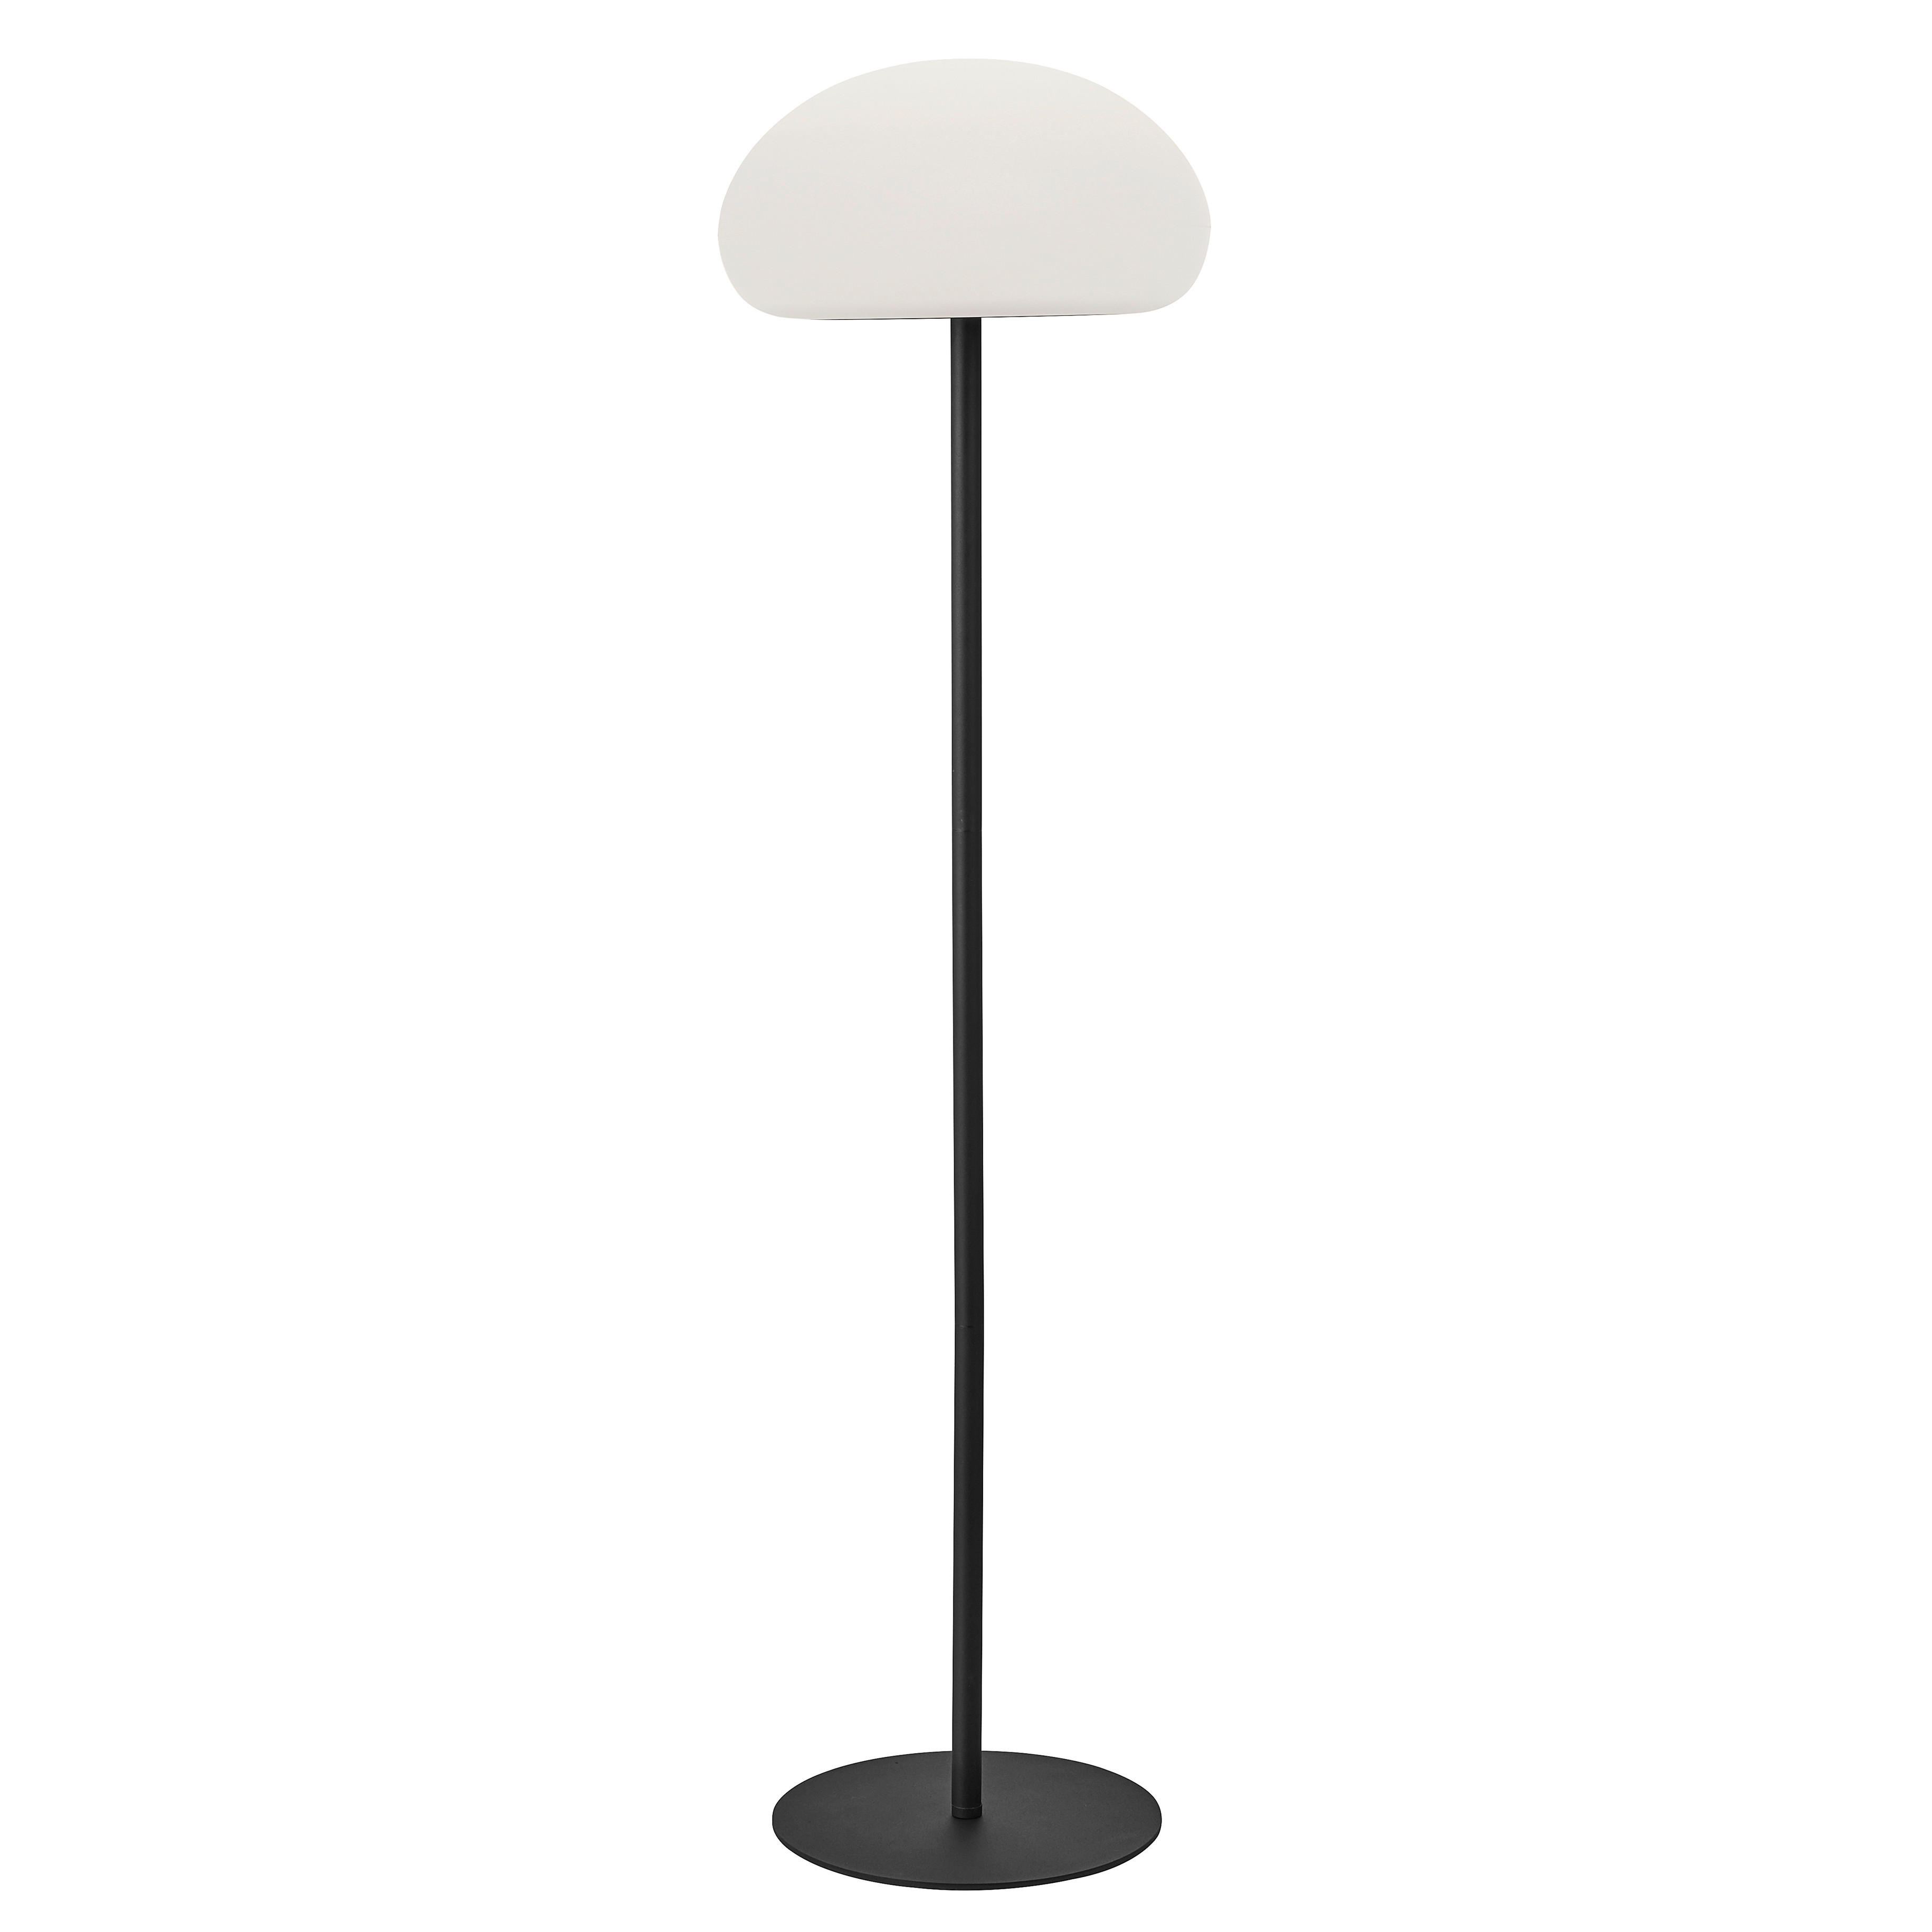 LED-STEHLEUCHTE 34/126 cm    - Schwarz/Weiß, Design, Kunststoff/Metall (34/126cm) - Nordlux